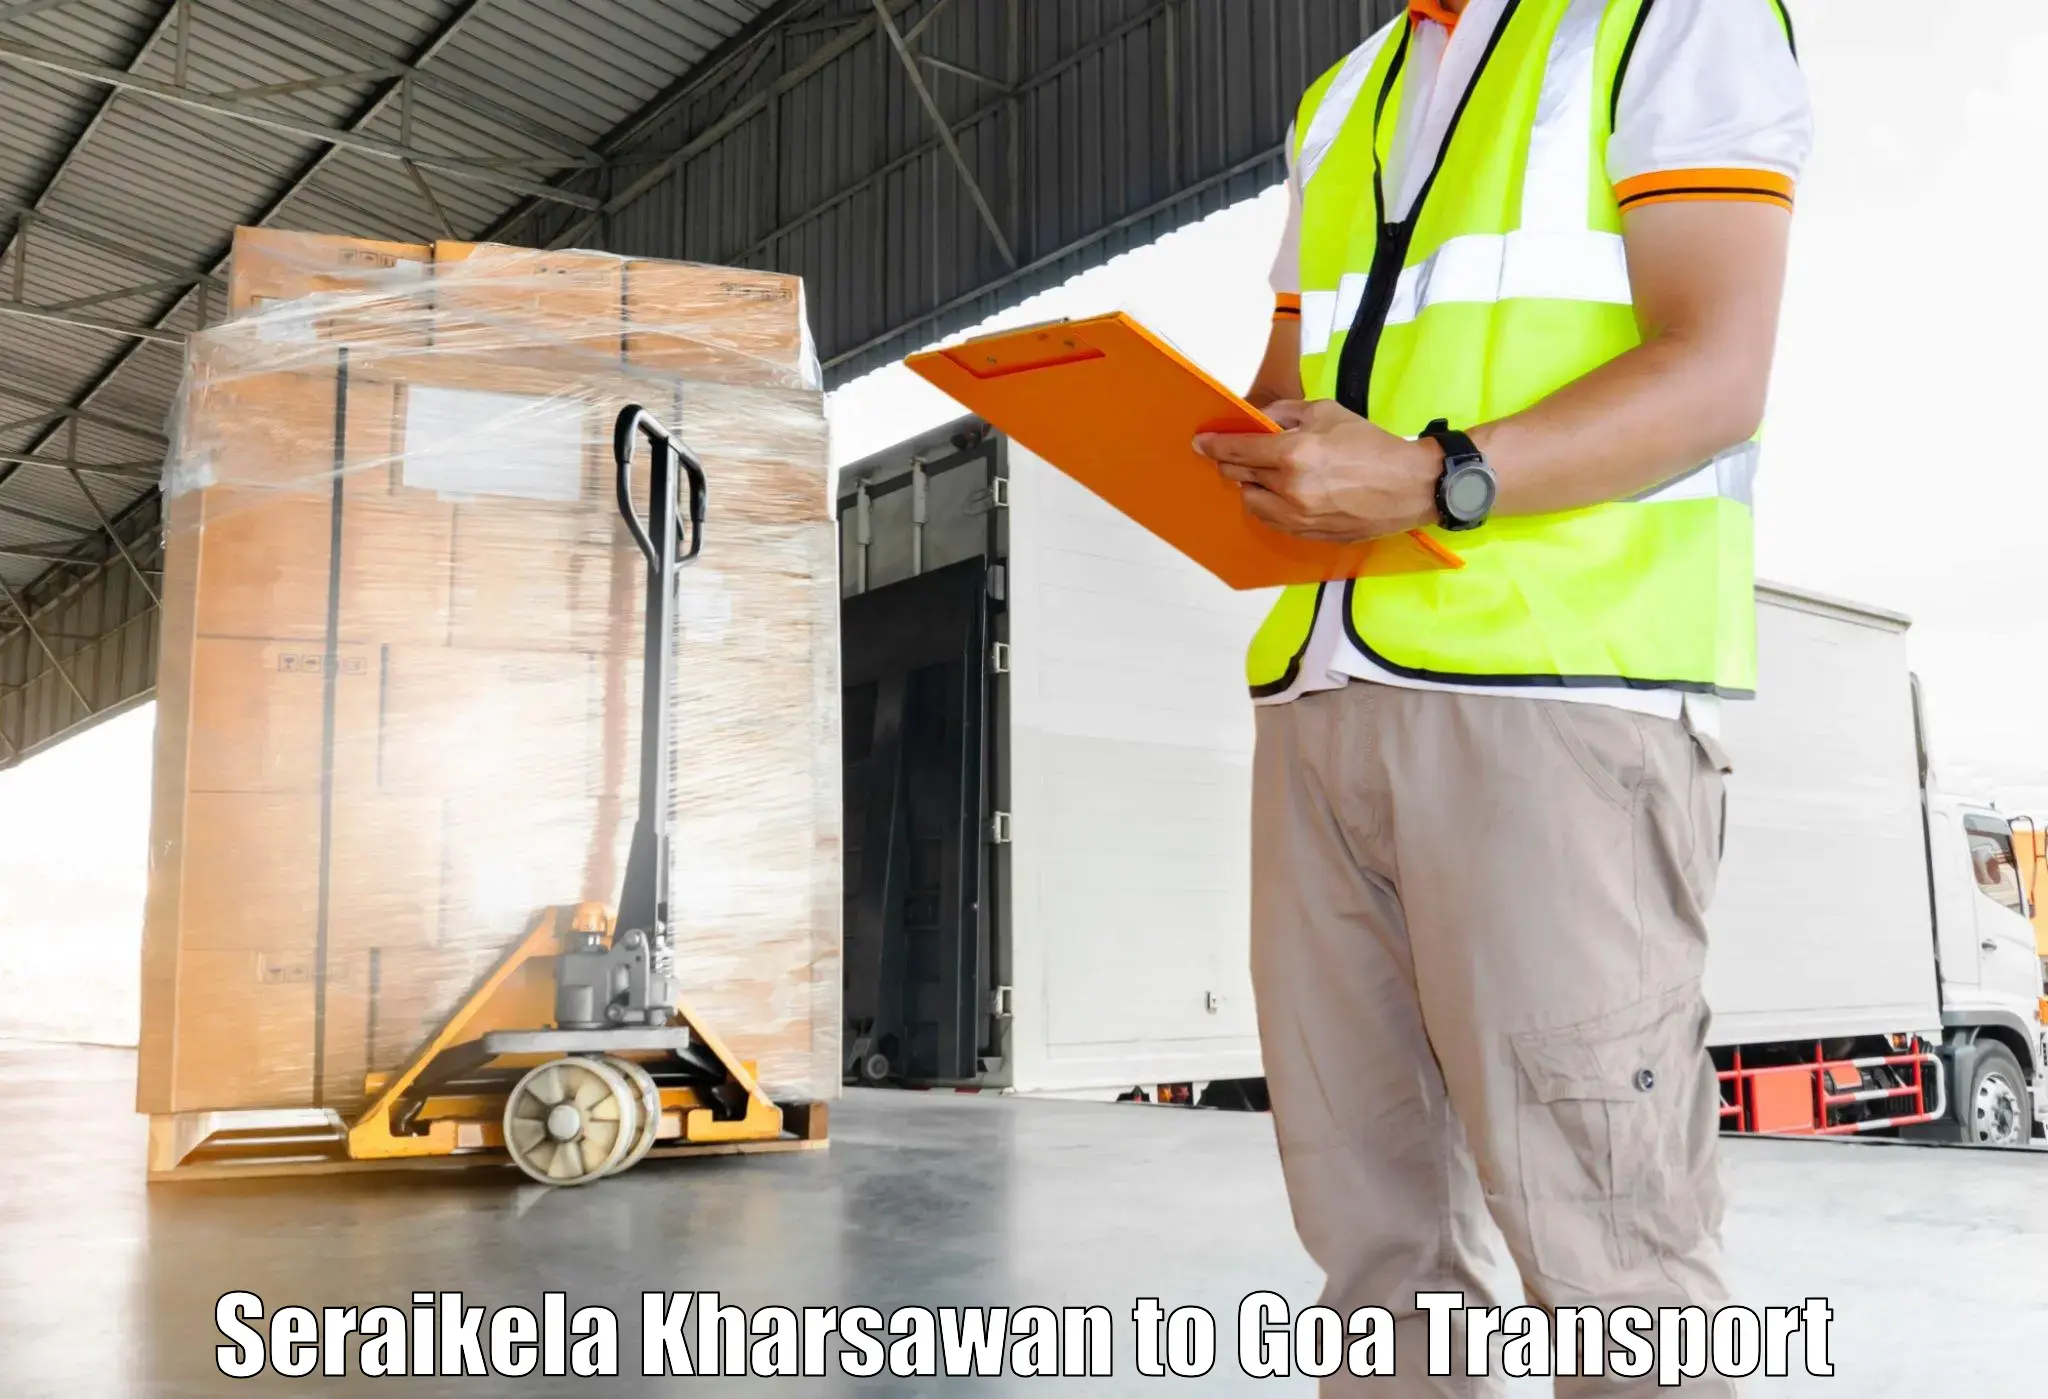 Transportation services Seraikela Kharsawan to Panjim